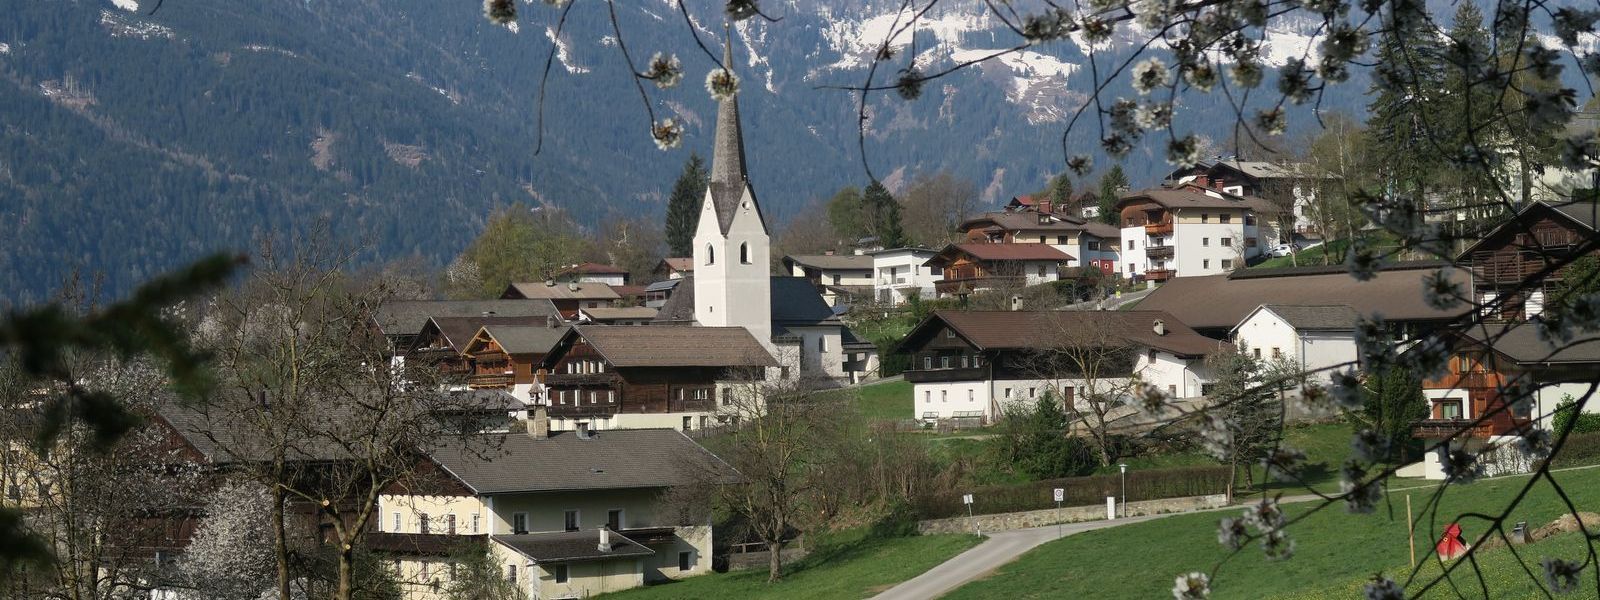 Ansicht der Gemeinde Thurn im Frühjahr mit der Kirche im Zentrum des Bildes